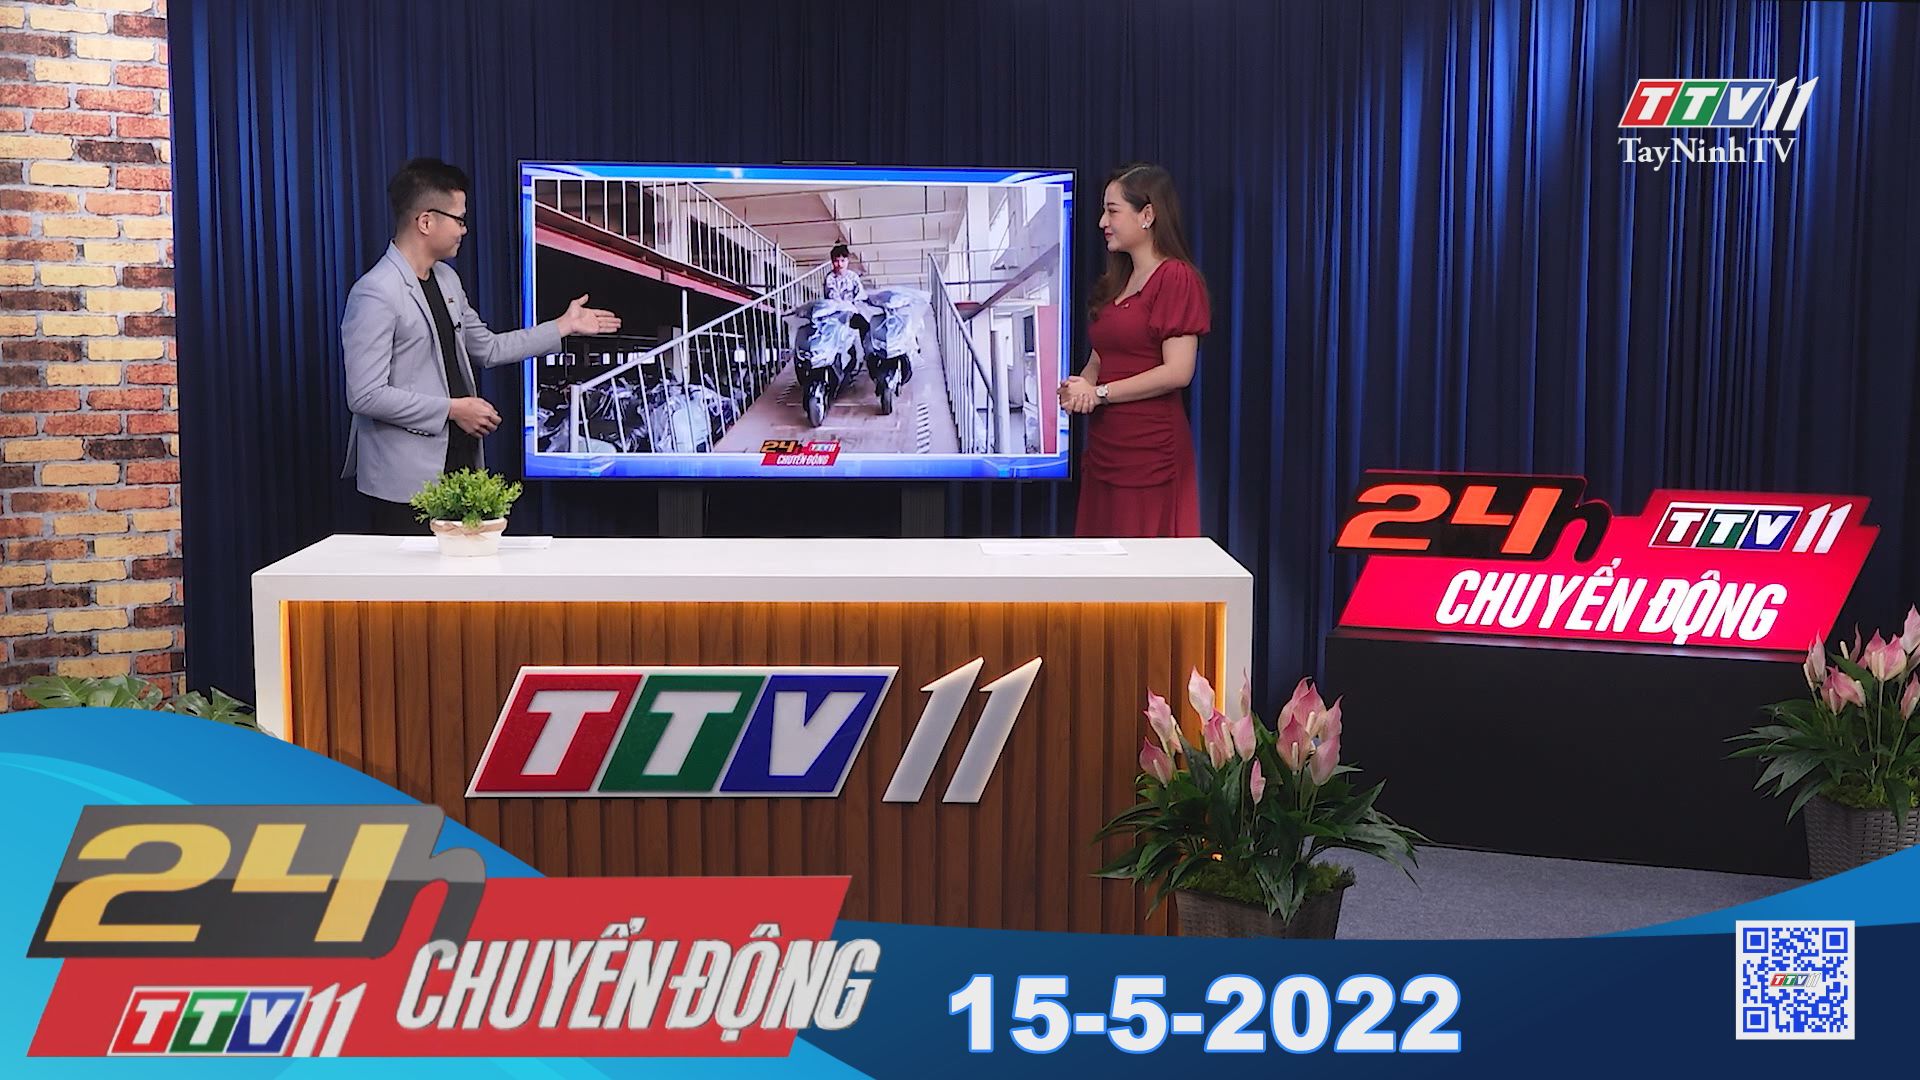 24h Chuyển động 15-5-2022 | Tin tức hôm nay | TayNinhTV